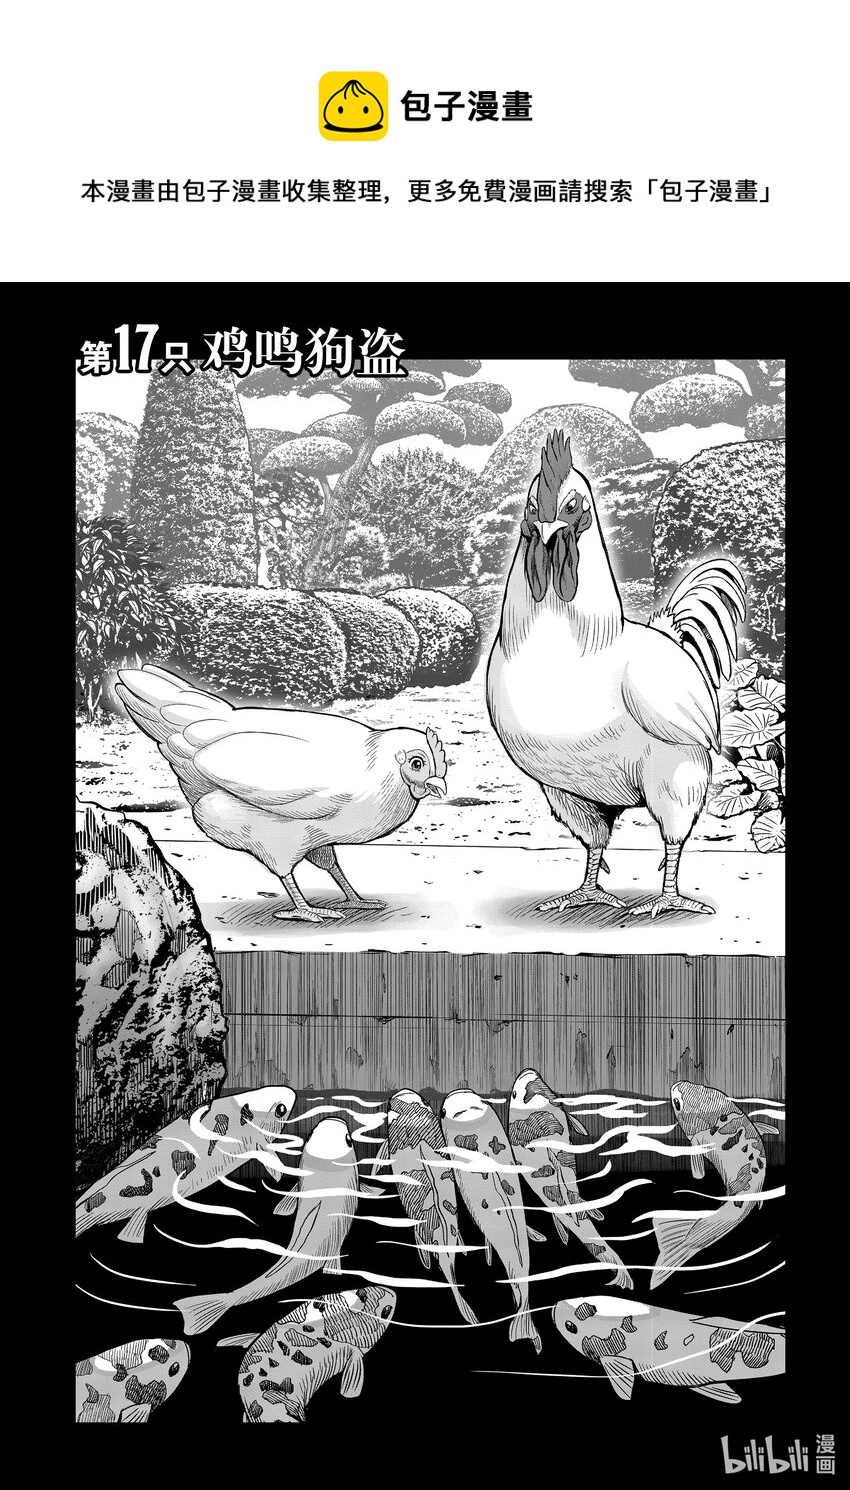 雞鬥士 - 第17只 雞鳴狗盜 - 1